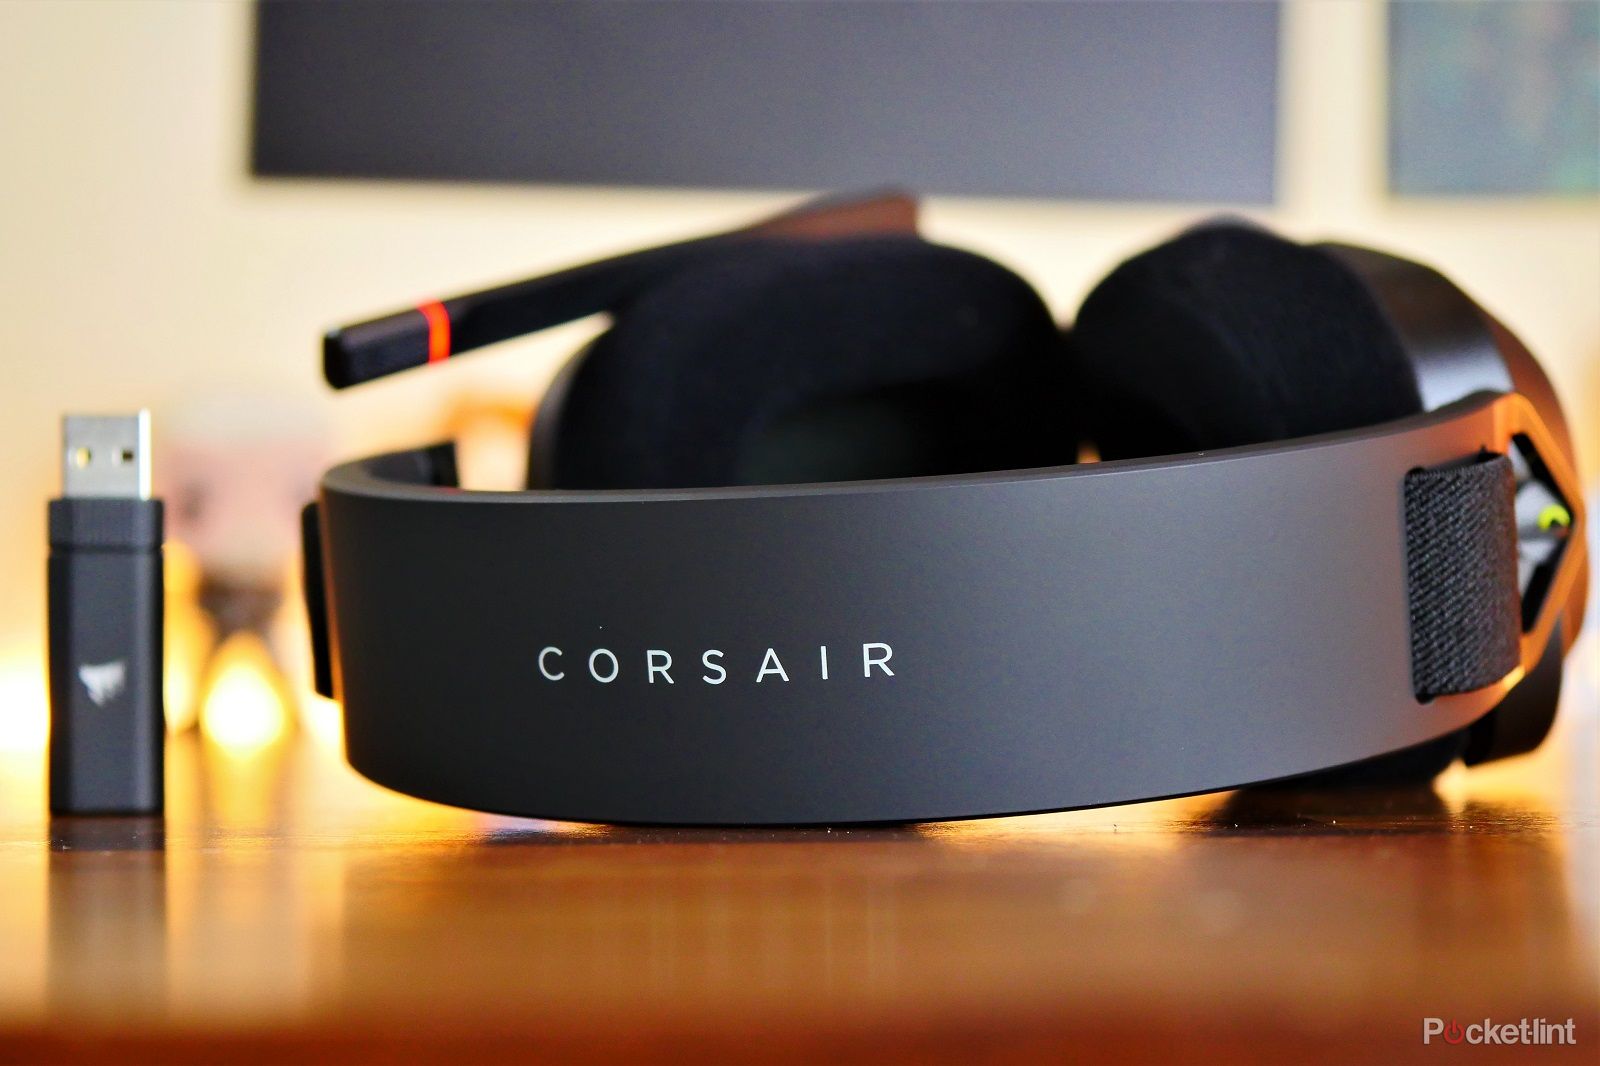 Análisis Corsair HS80 MAX Wireless, entre los mejores cascos inalámbricos  por debajo de 200€ - Meristation